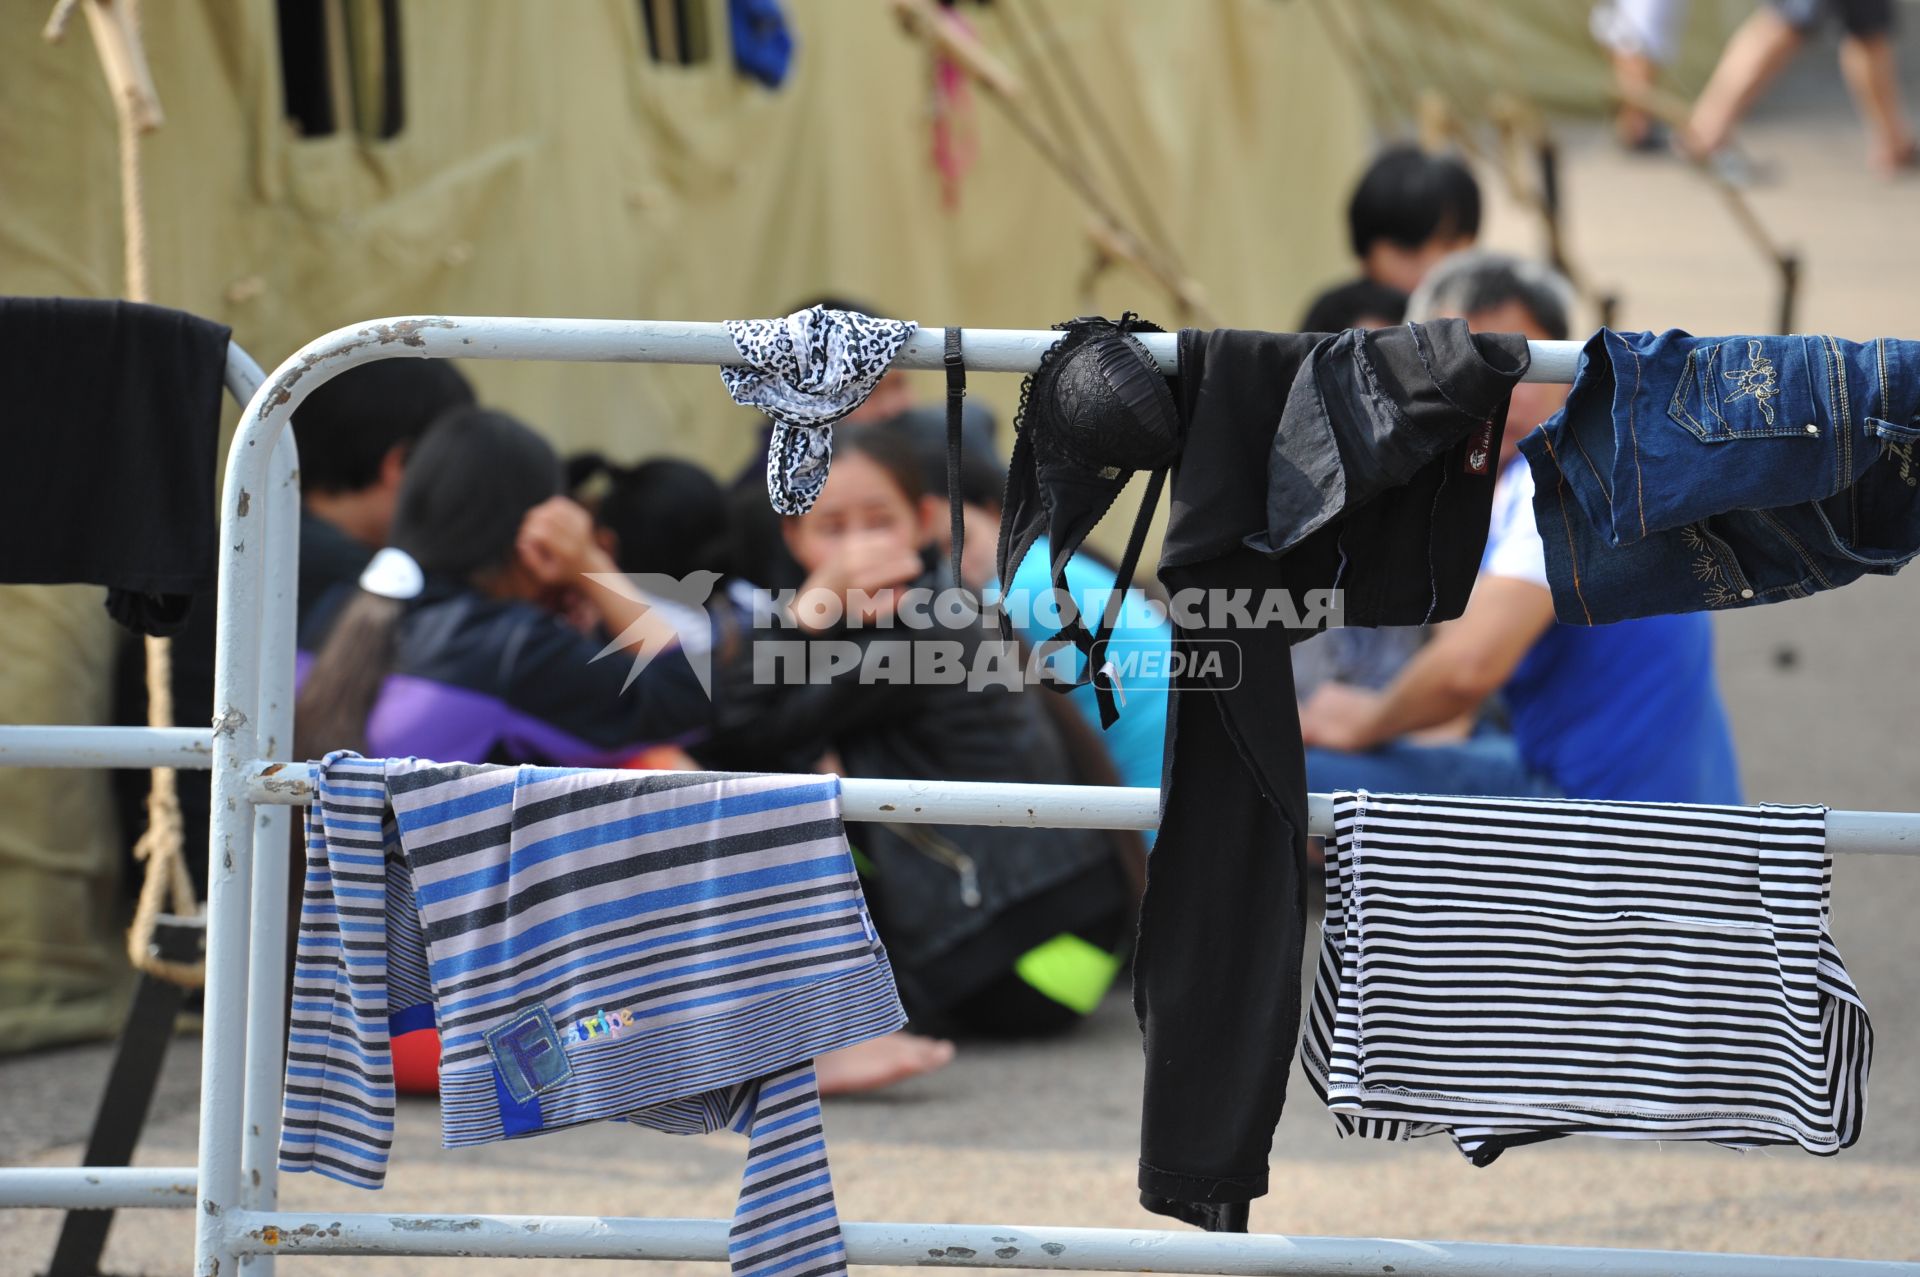 2-ой Иртышский проезд. Палаточный лагерь для временного содержания нелегальных мигрантов, ожидающих депортации на родину. На снимке: вещи мигрантов, висящие на ограждениях для просушивания.